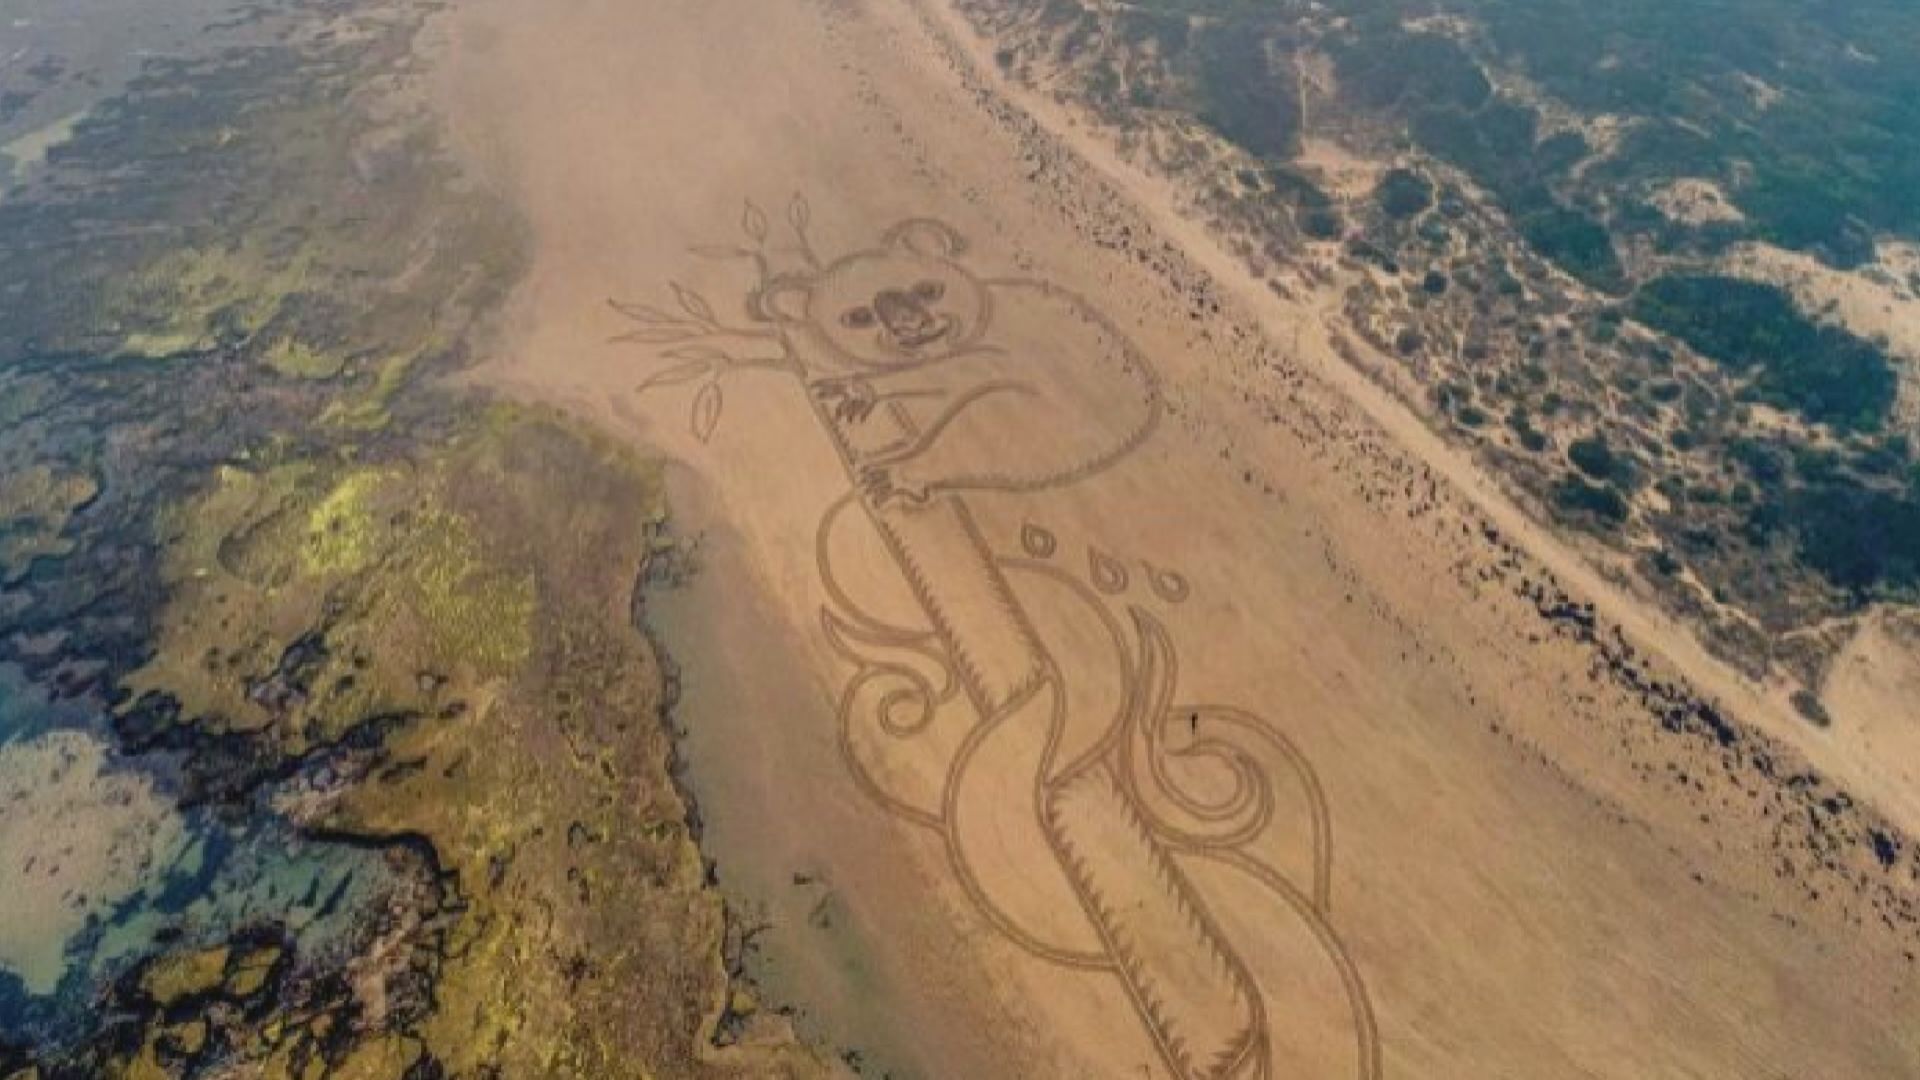 【環球薈報】澳洲藝術家在沙灘創作巨型樹熊畫作